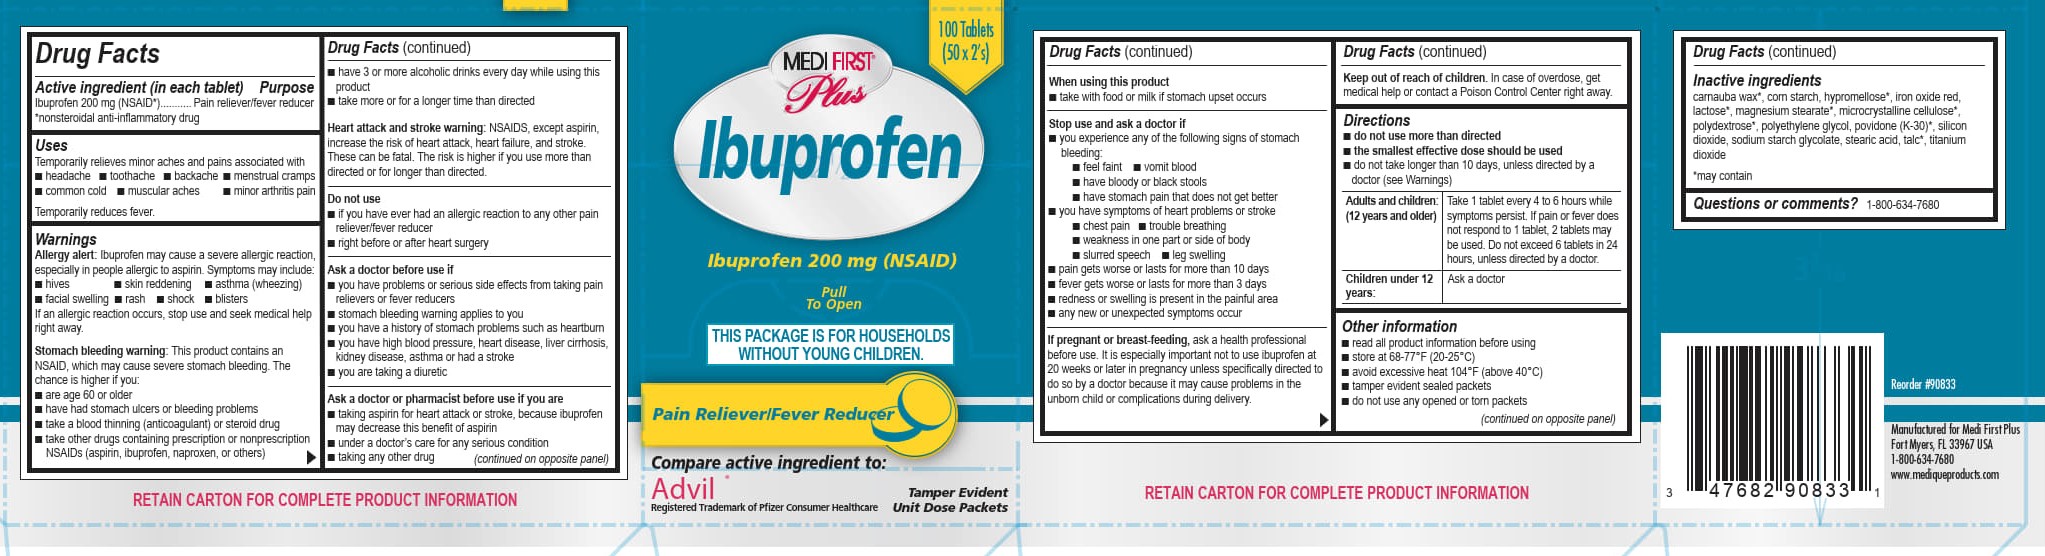 100R Ibuprofen 90833 5-3-23 LNK